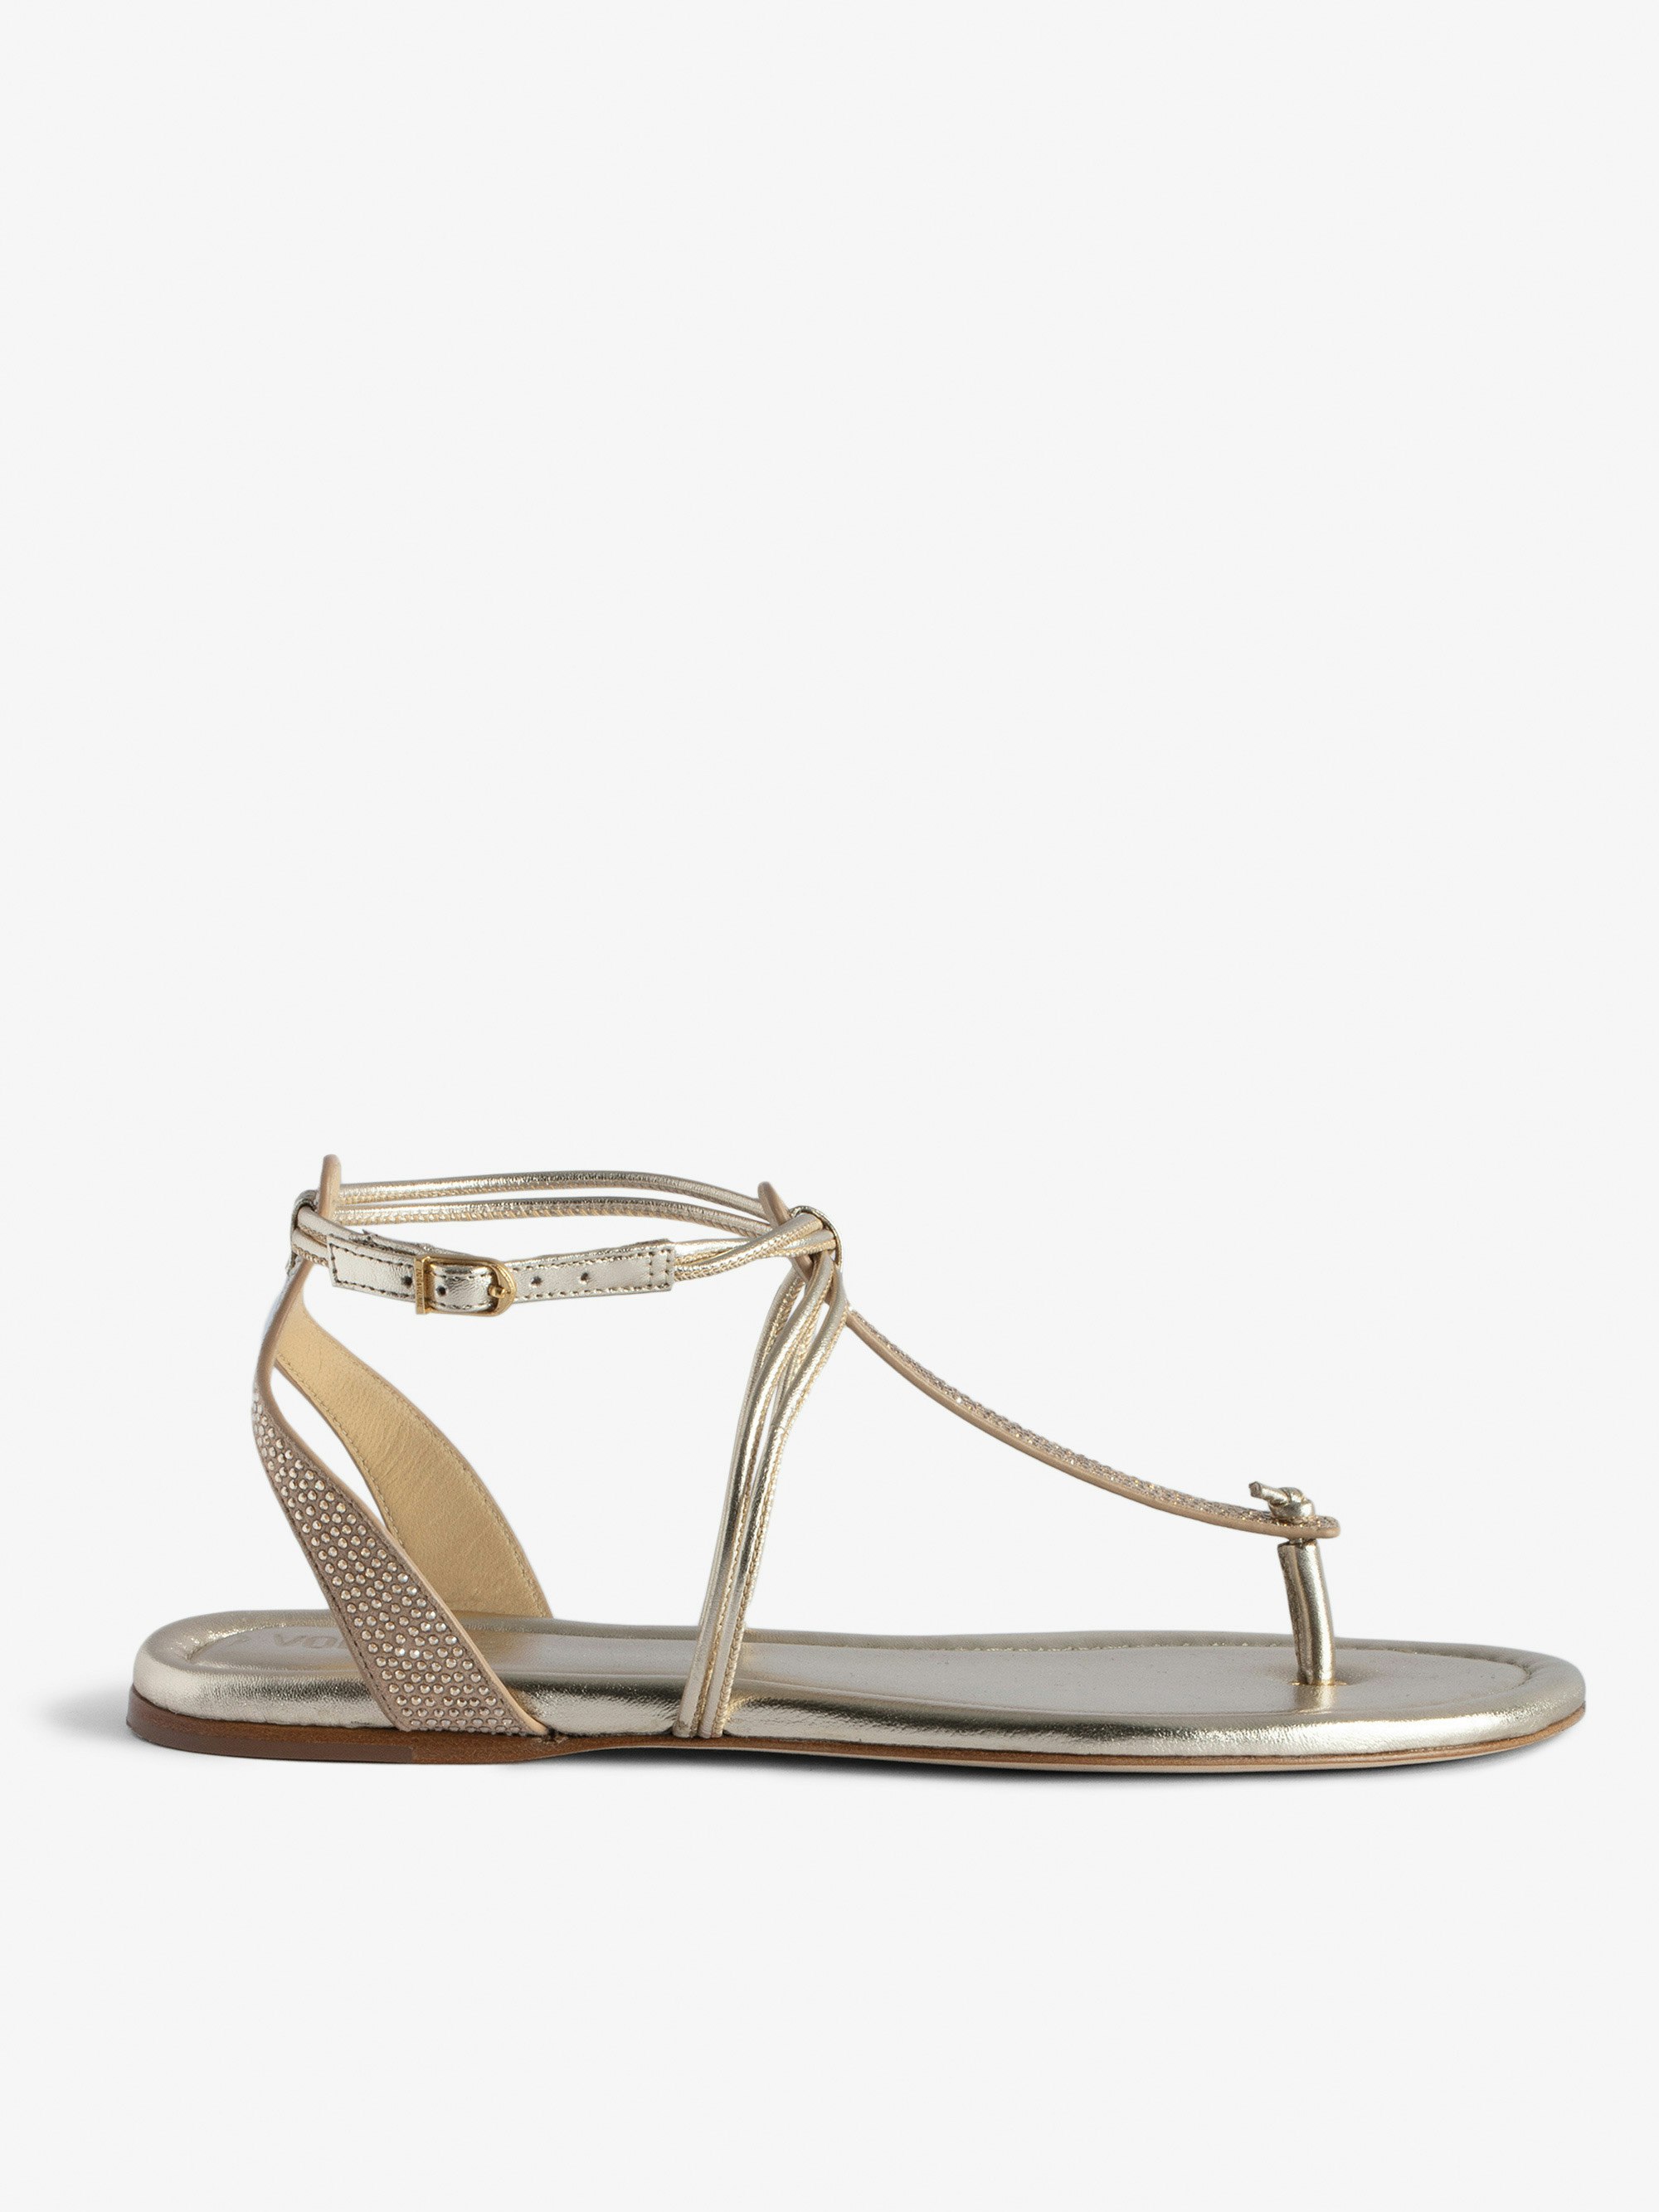 Moonstar Sandals sandals gold women | Zadig&Voltaire